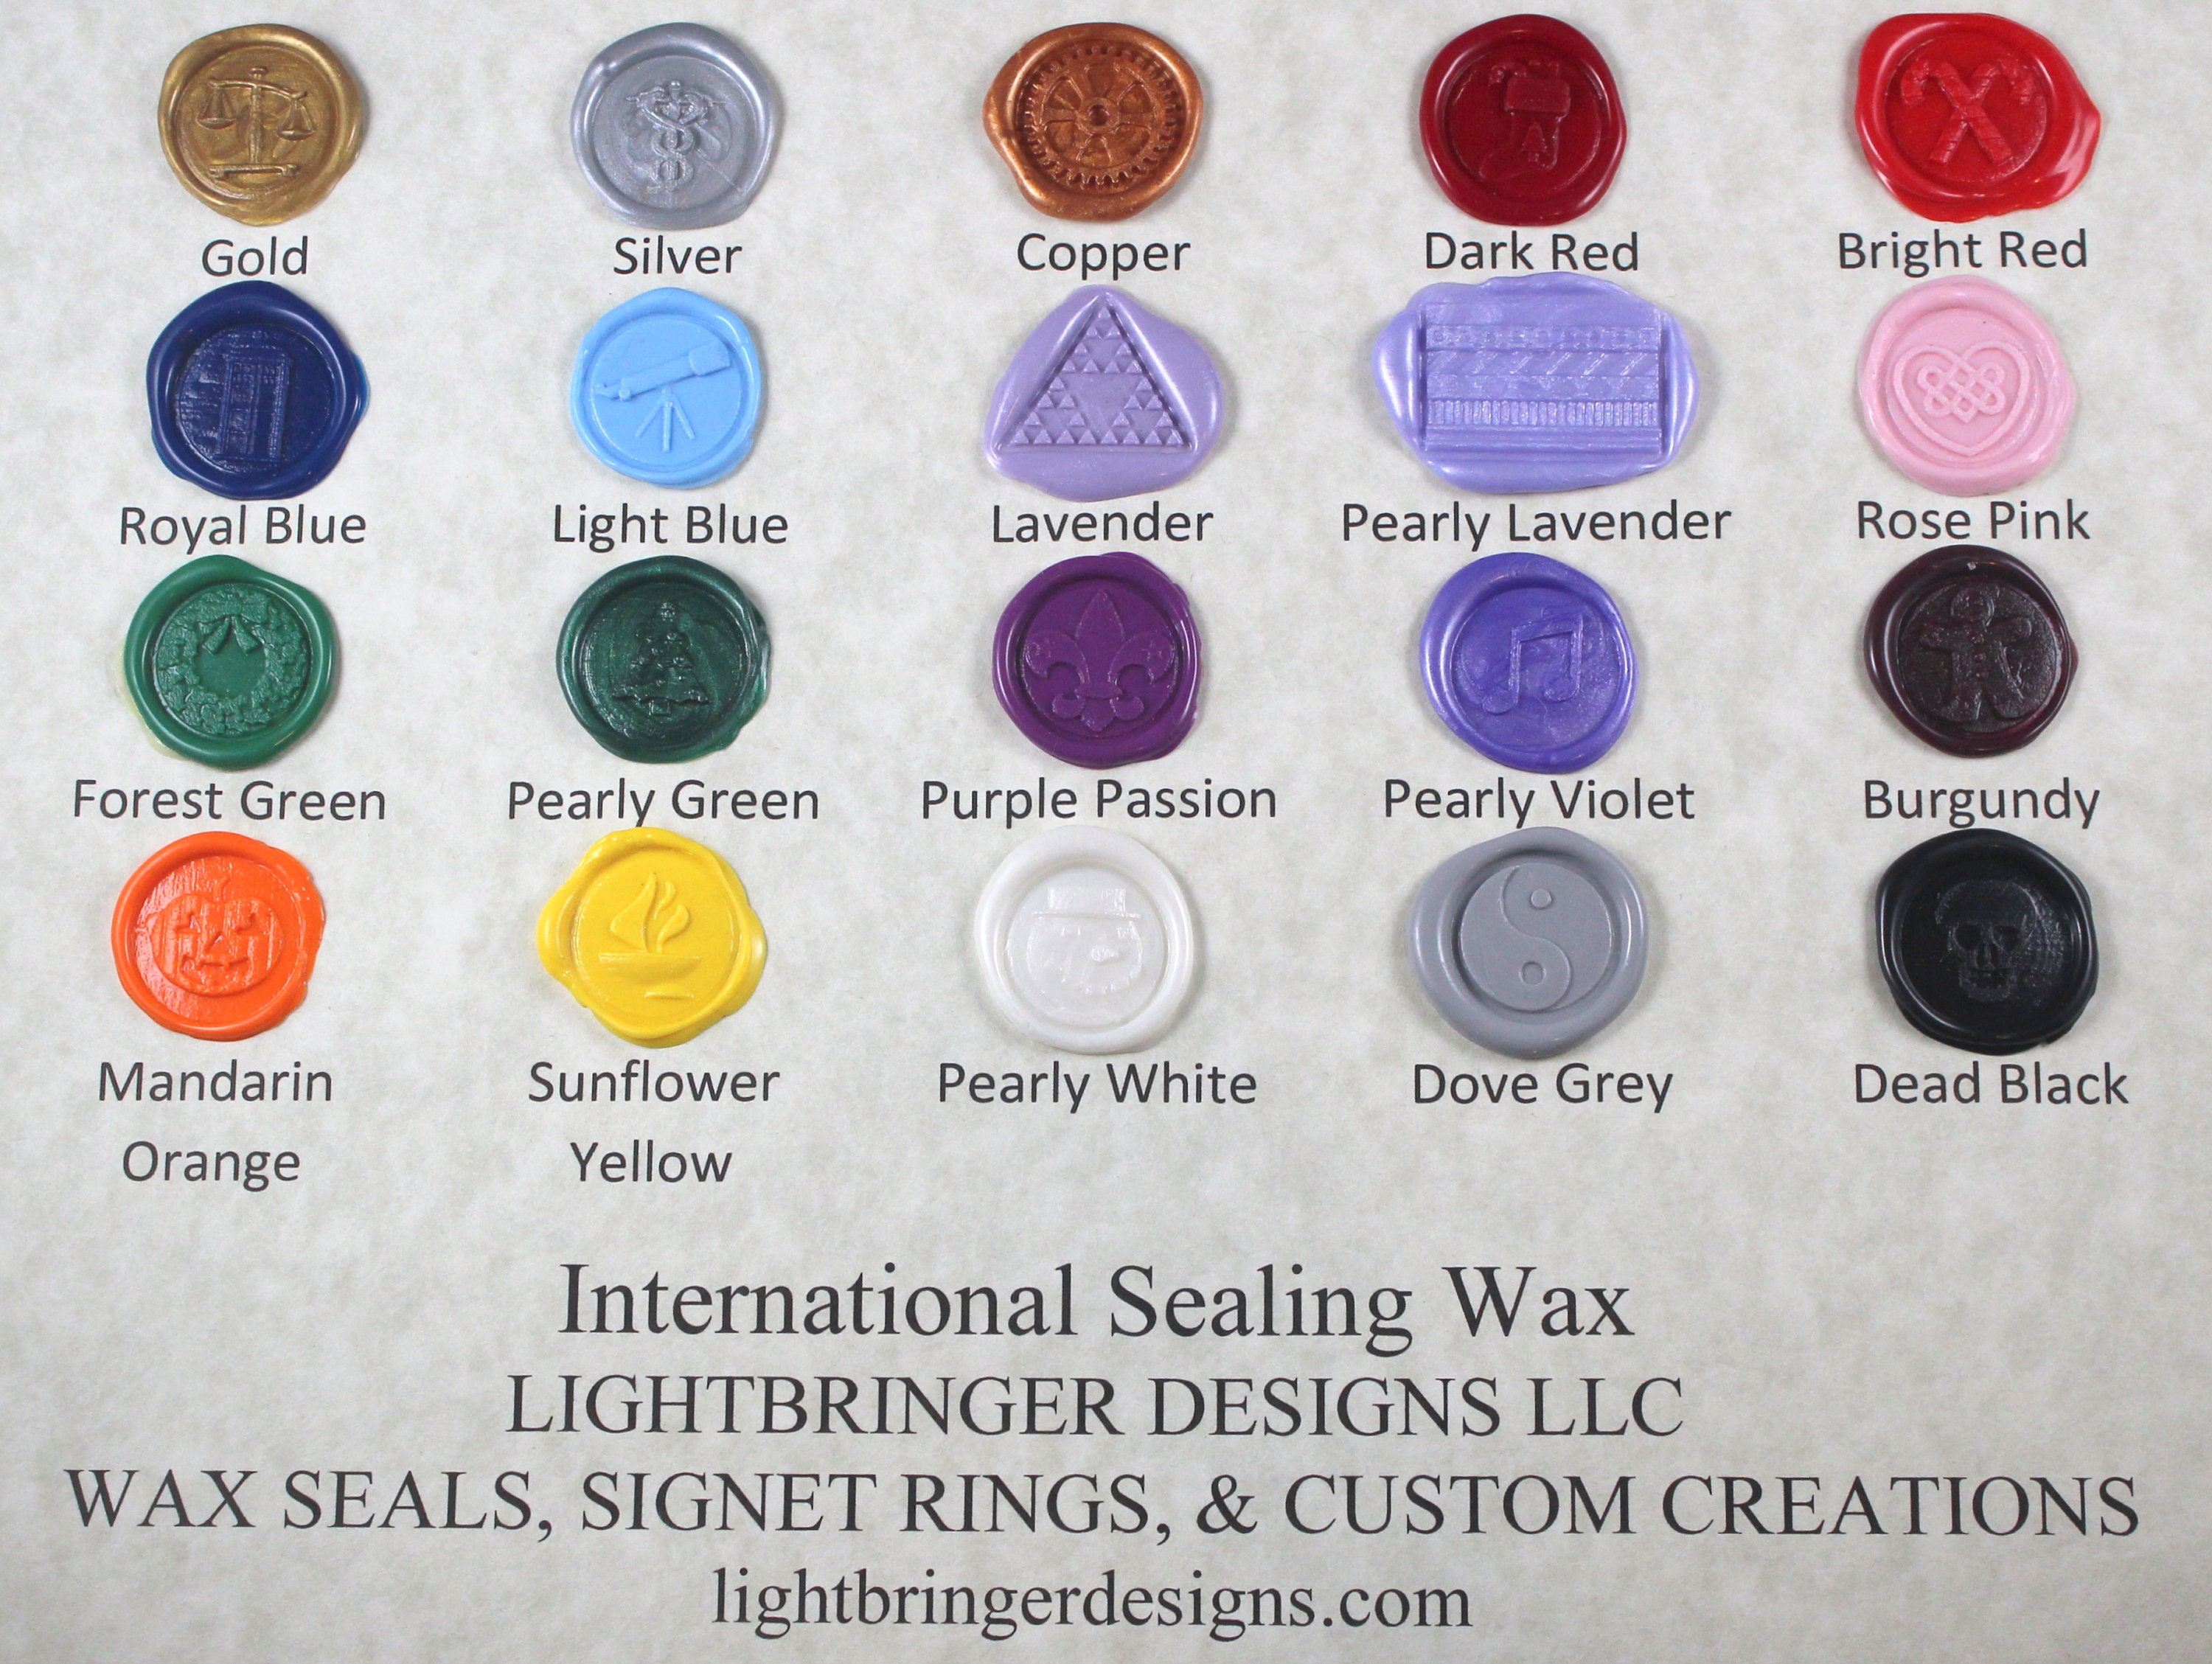 Wax Seal, Sealing Wax, Wax Sticks, Glue Gun Wax, Glue Gun Sealing Wax,wax  Seal Stamp, Metallic Wax, Bronze Sealing Wax, Mailing Wax 